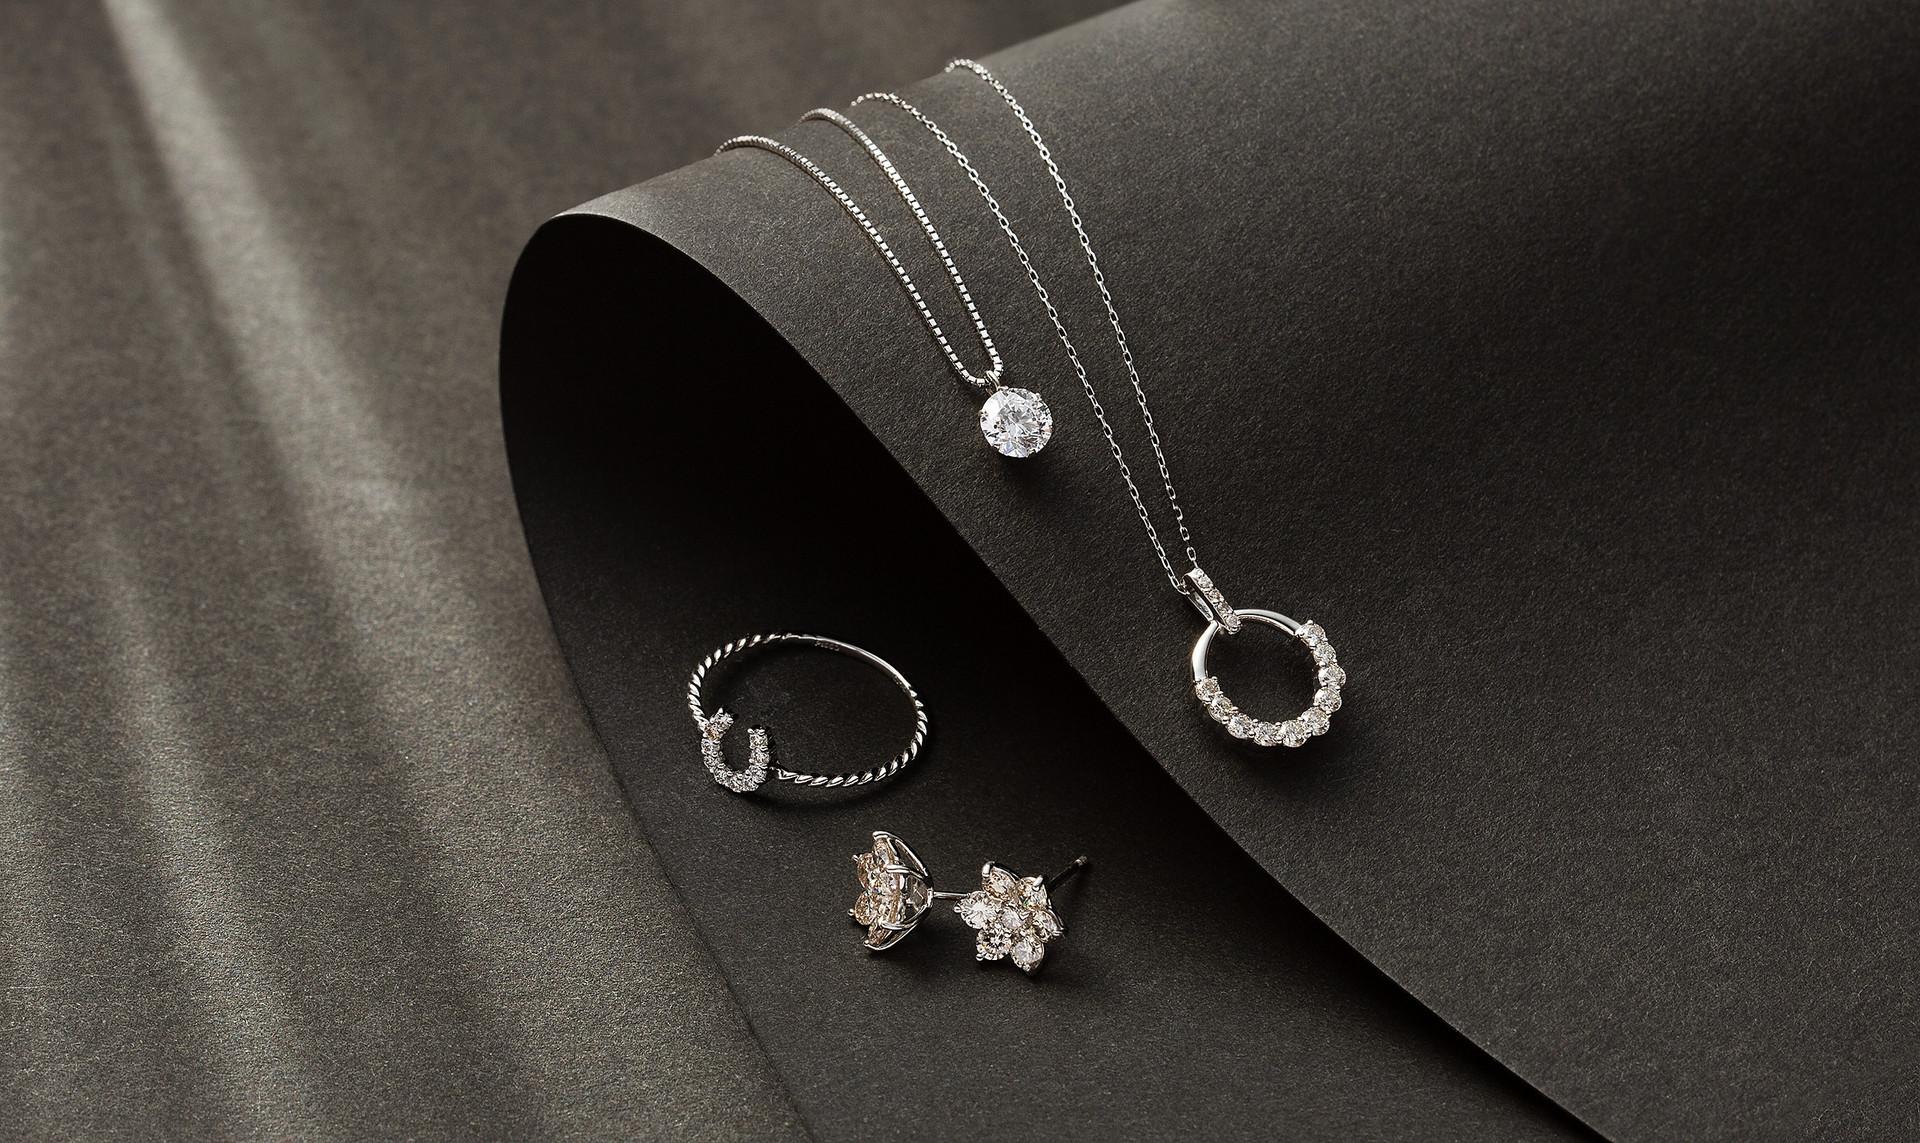 Premium diamond jewels collection